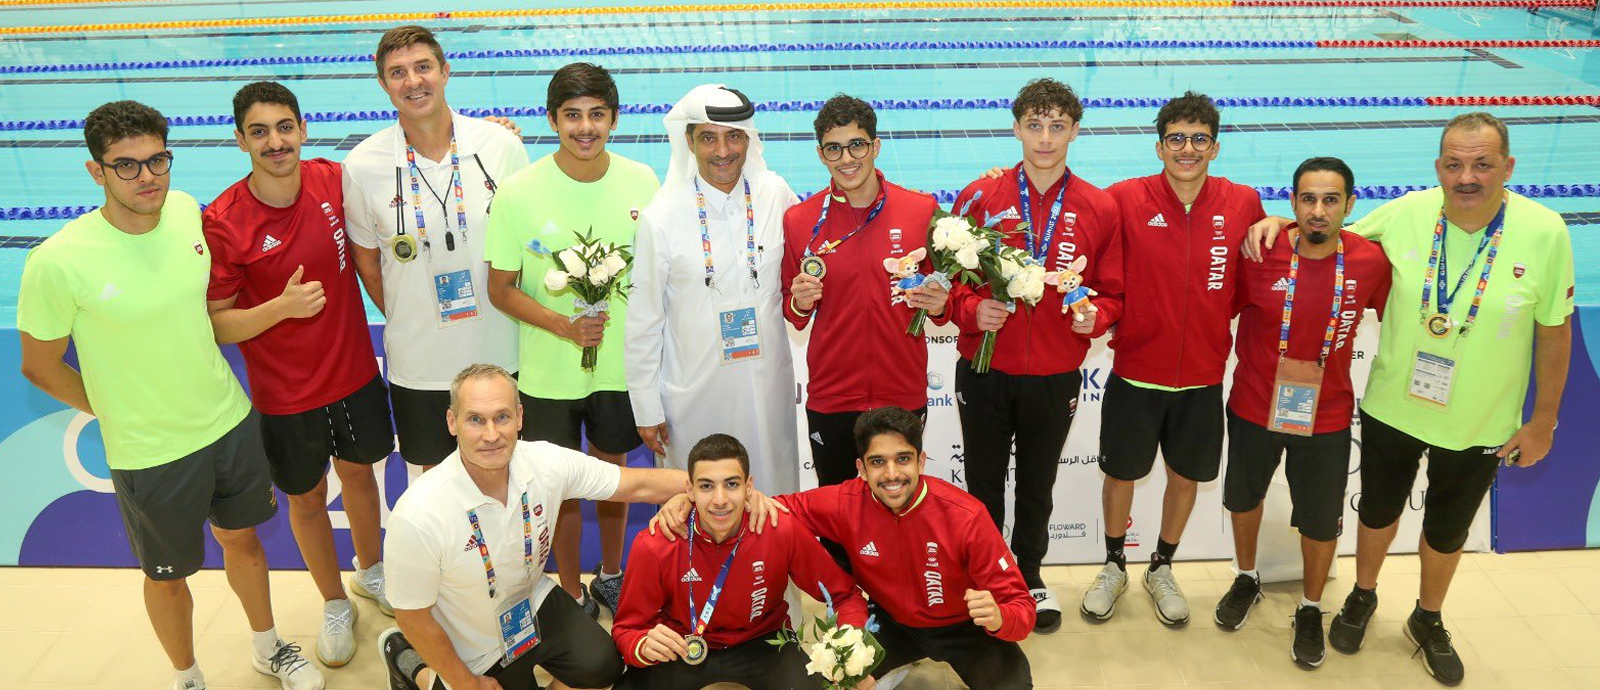 منتخبنا الوطني للسباحة يحصد 5 ميداليات بدورة الألعاب الرياضية الخليجية